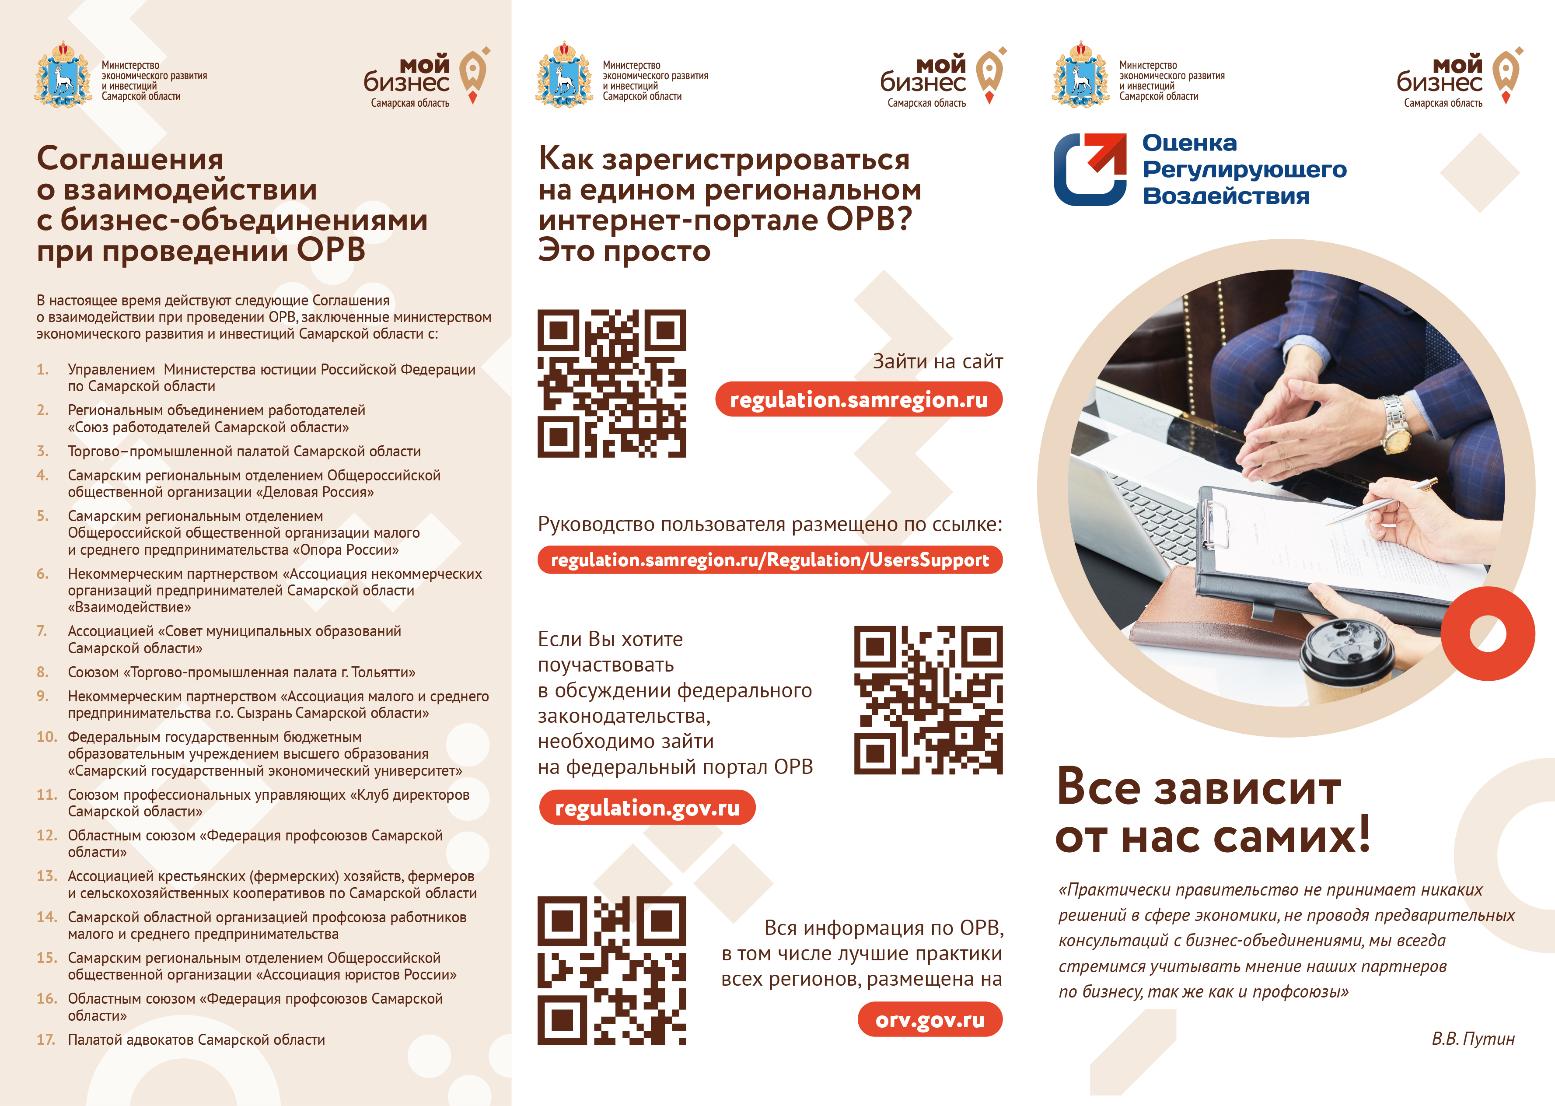 Предприниматели Самарской области могут оценить проекты нормативных документов 